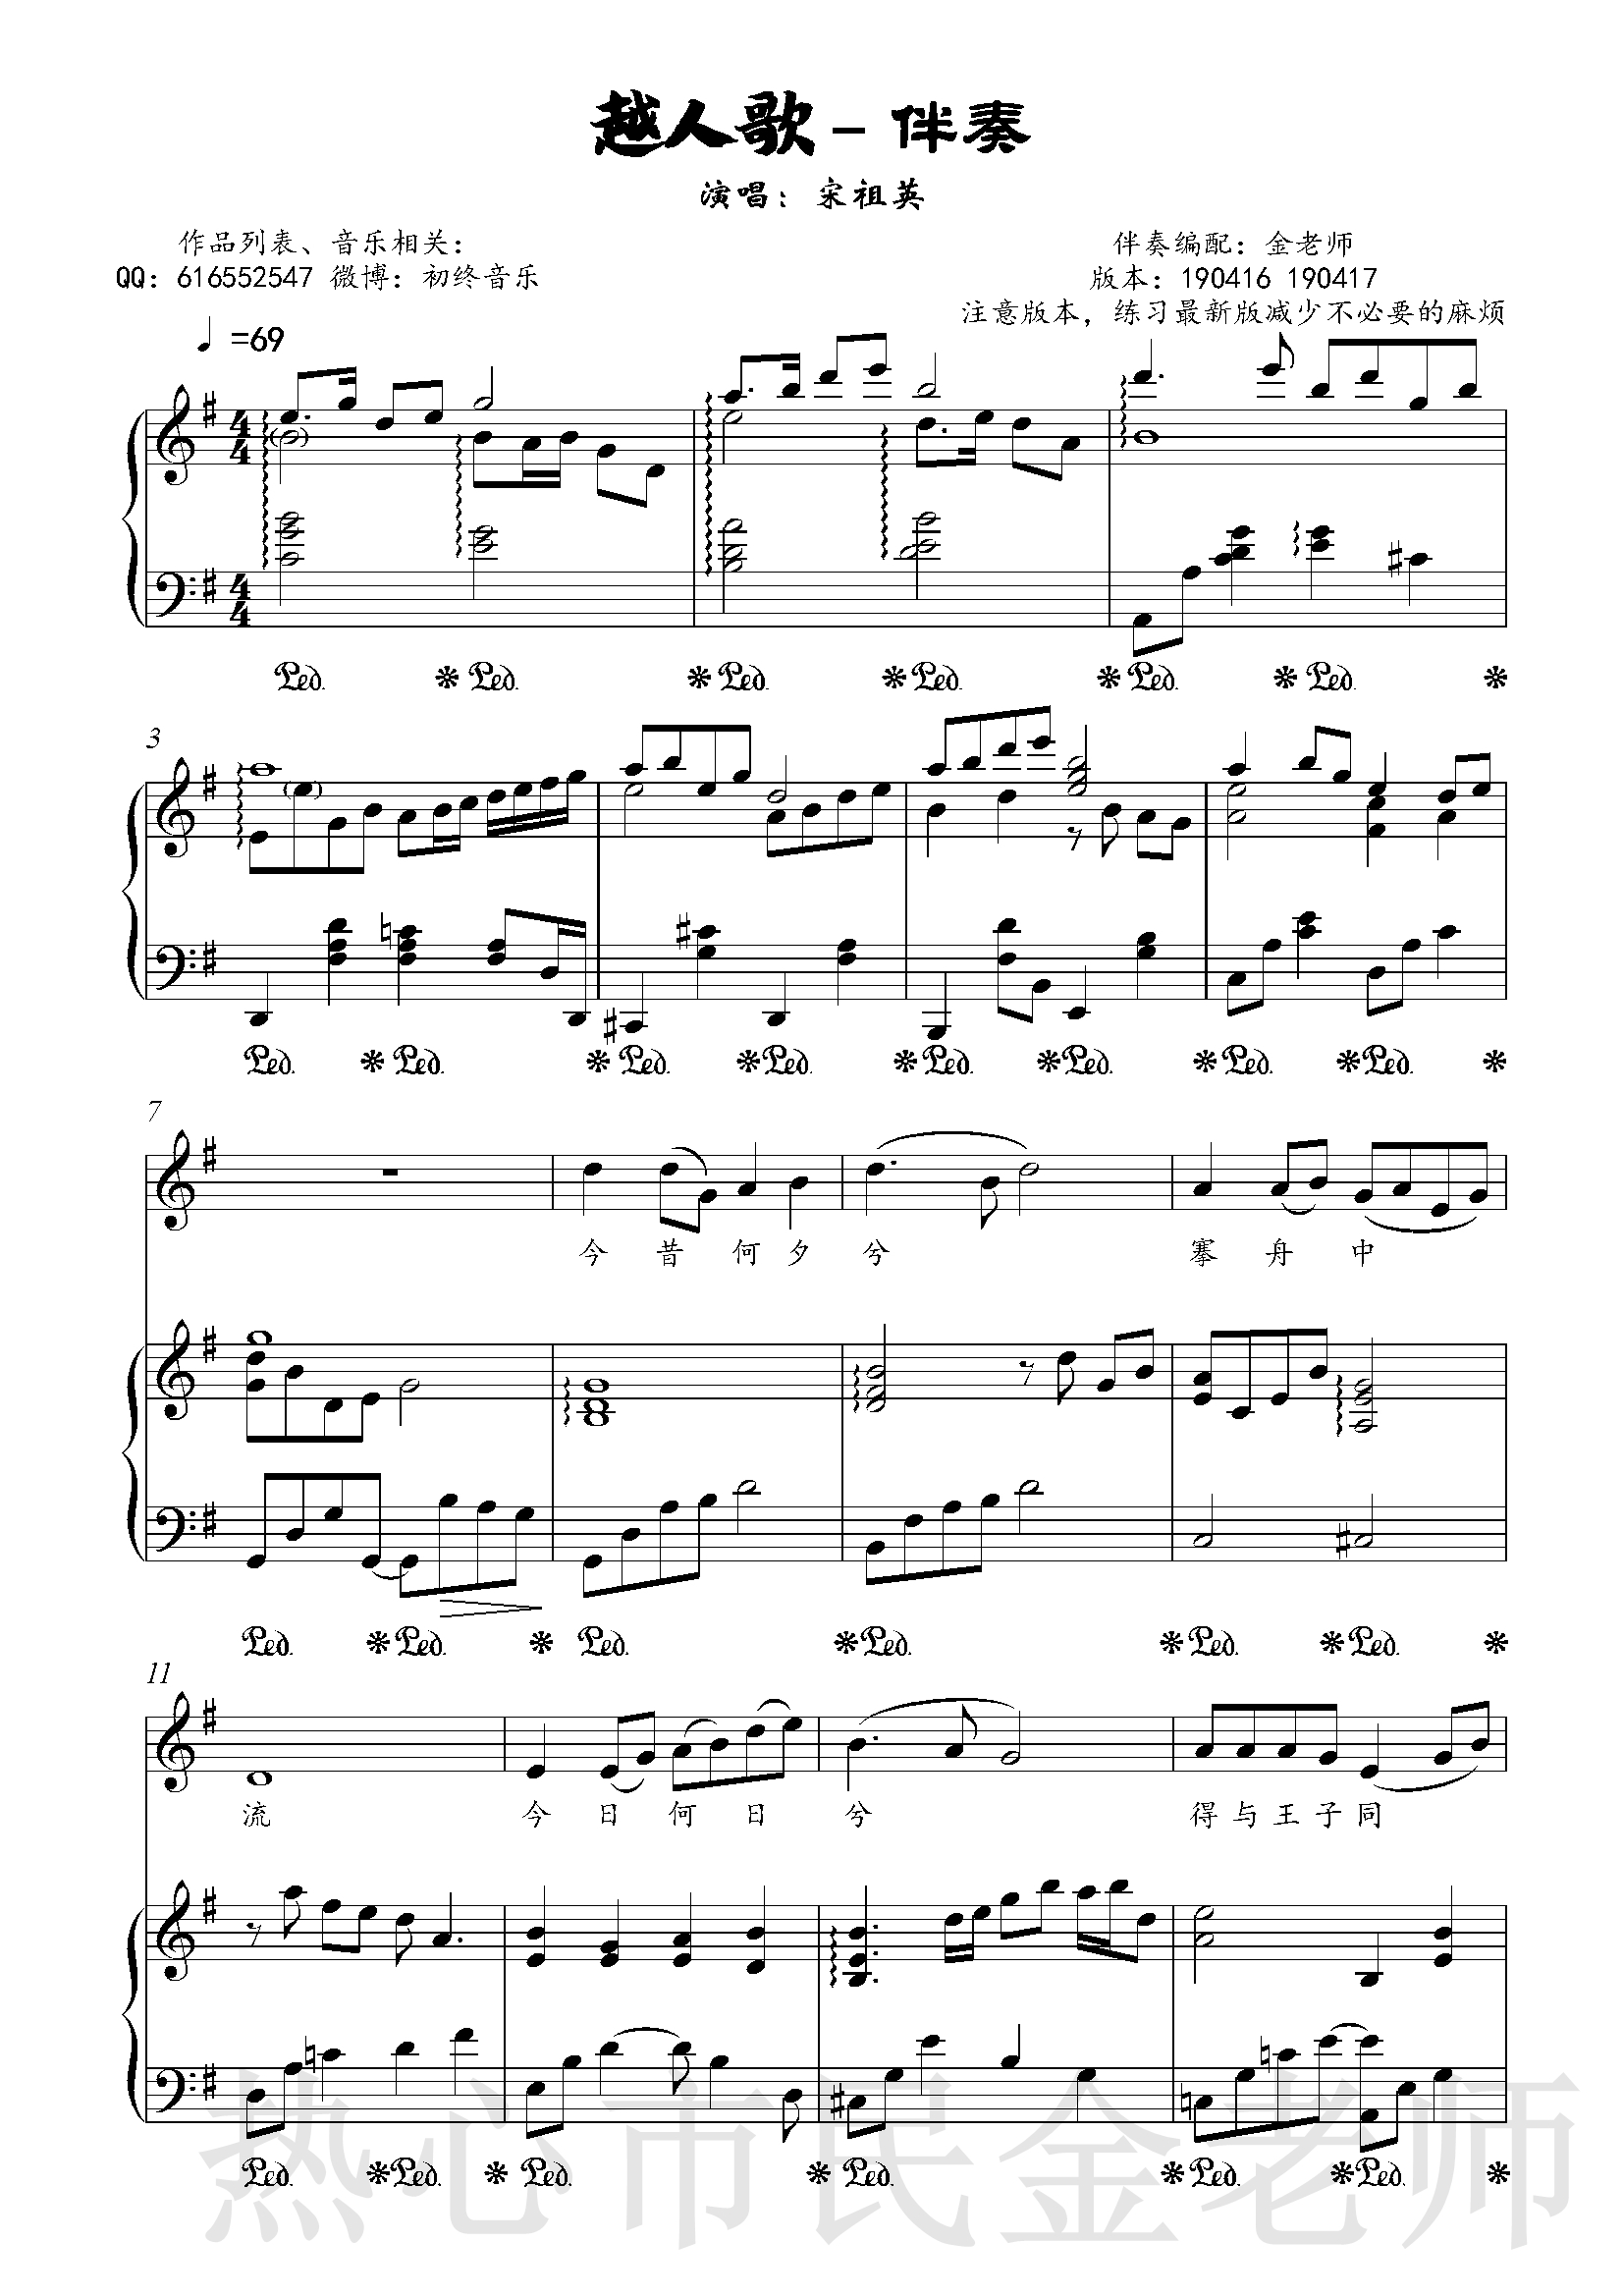 越人歌钢琴谱 宋祖英 金老师伴奏1904172